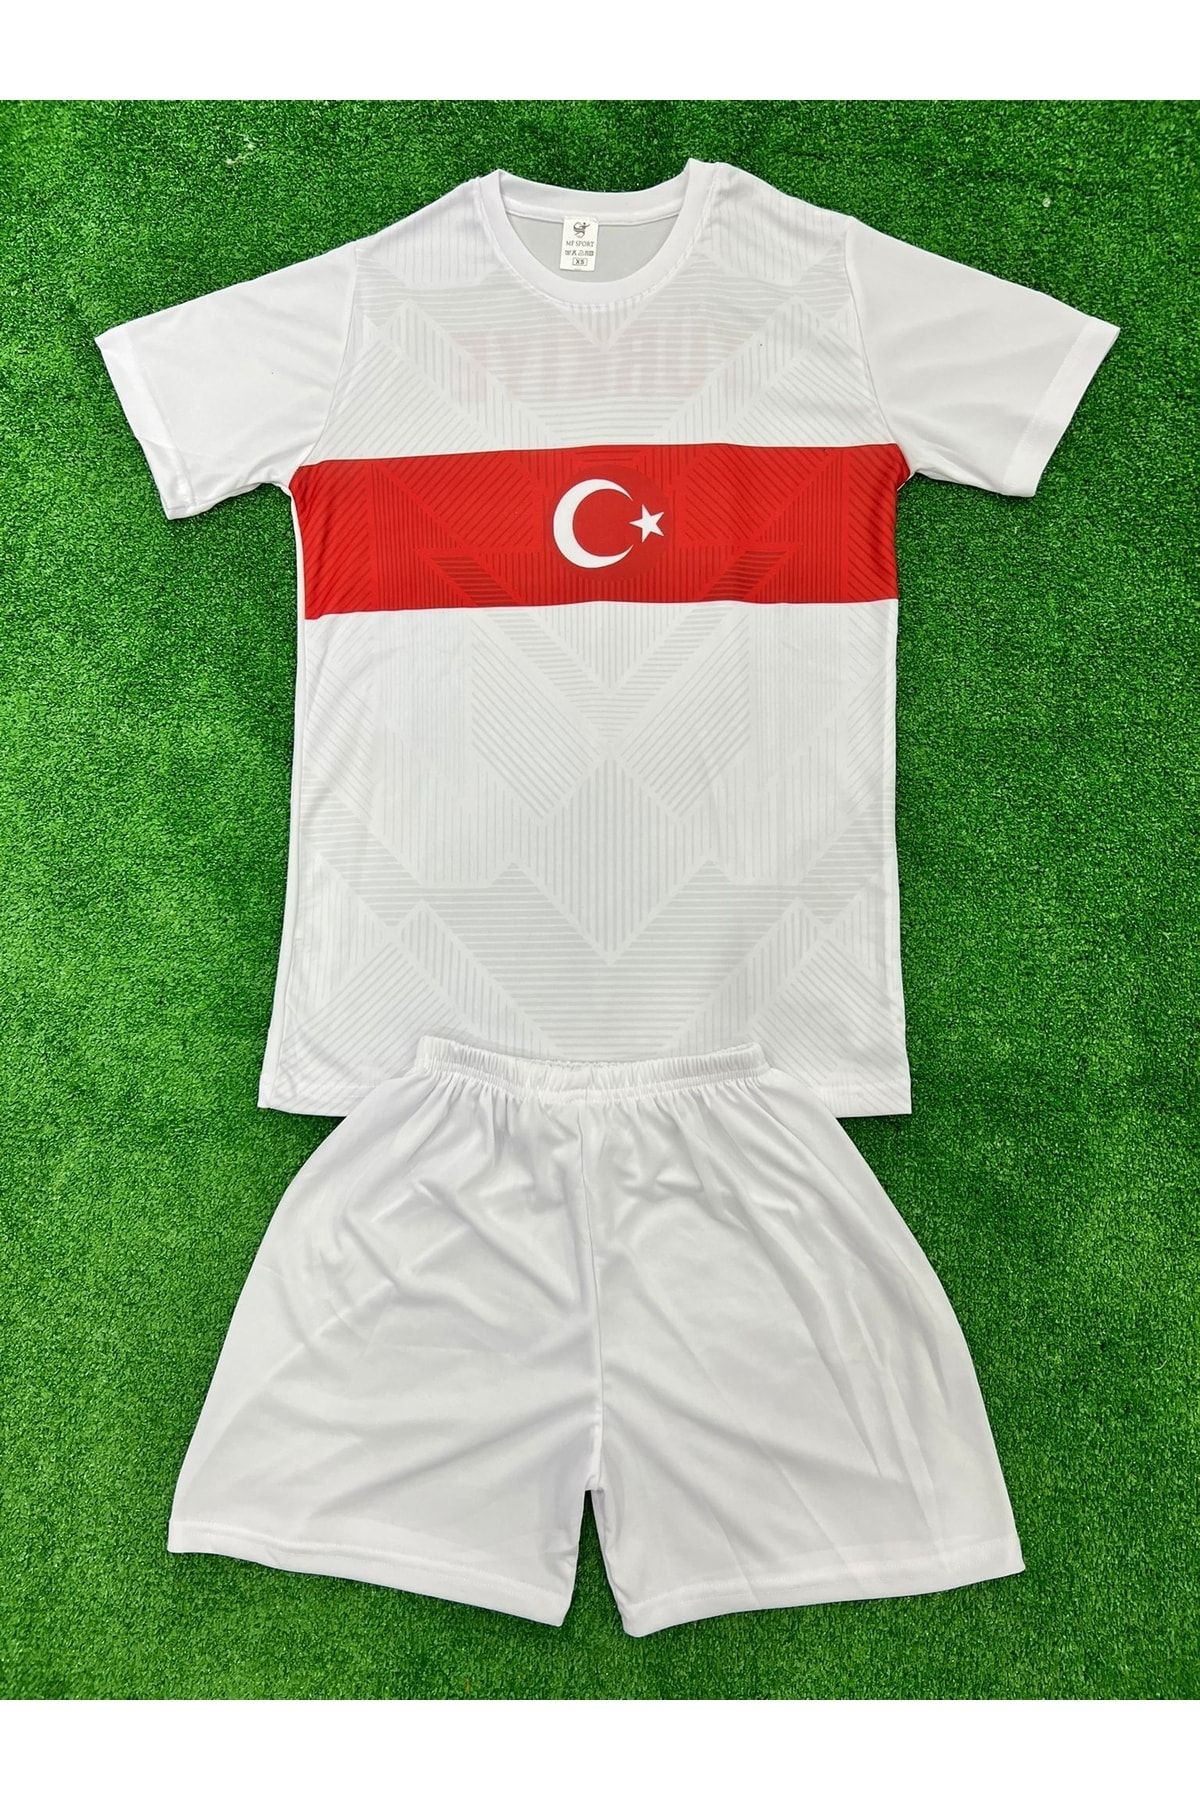 MufaLife Sport Türkiye Milli Takım Forması Çocuk Forma Takım